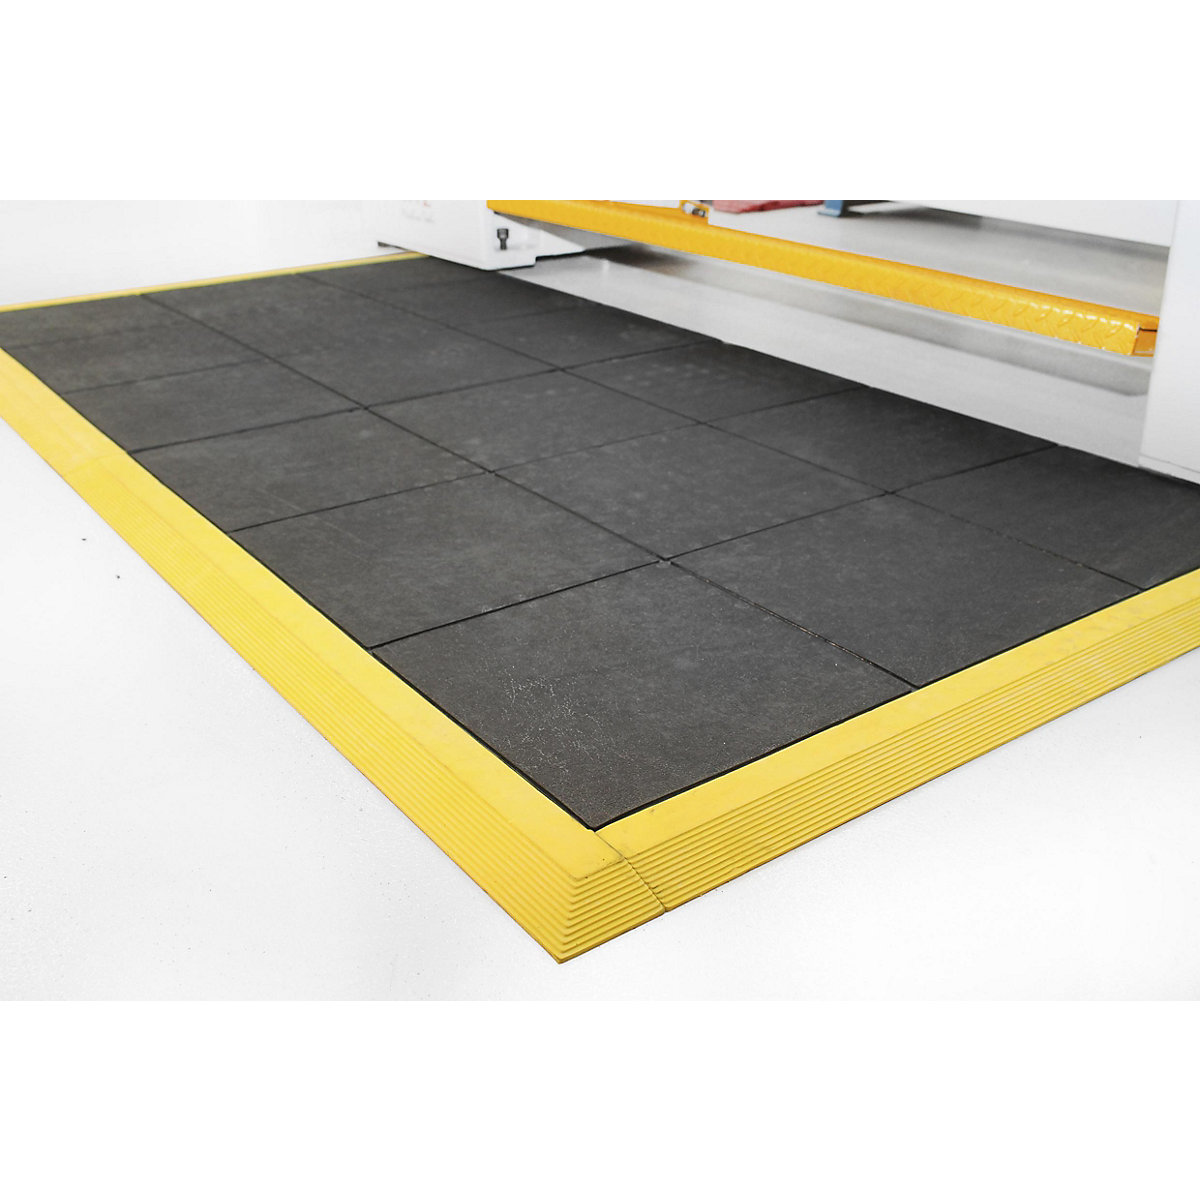 Arbeitsplatzbodenbelag Fatigue-Step, mit geschlossener Oberfläche, Nitrilgummi, 900 x 900 mm, schwarz